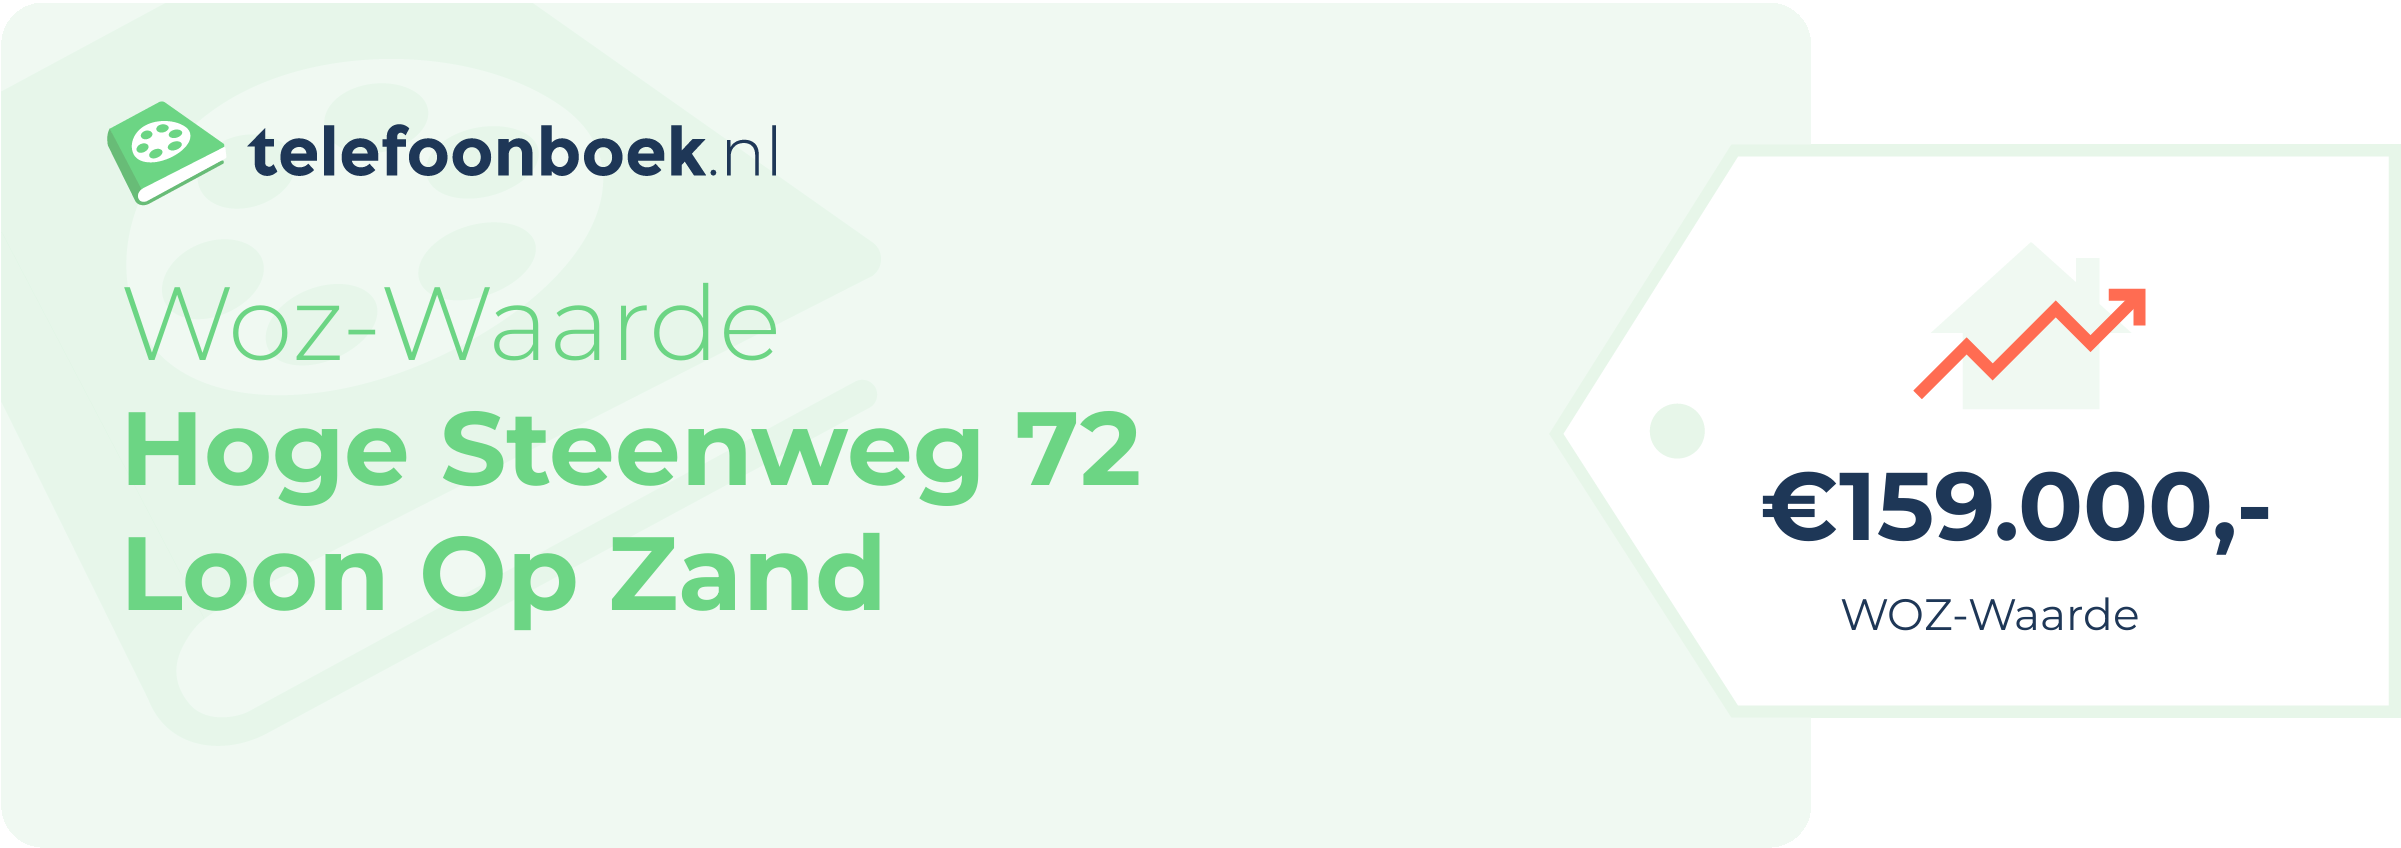 WOZ-waarde Hoge Steenweg 72 Loon Op Zand